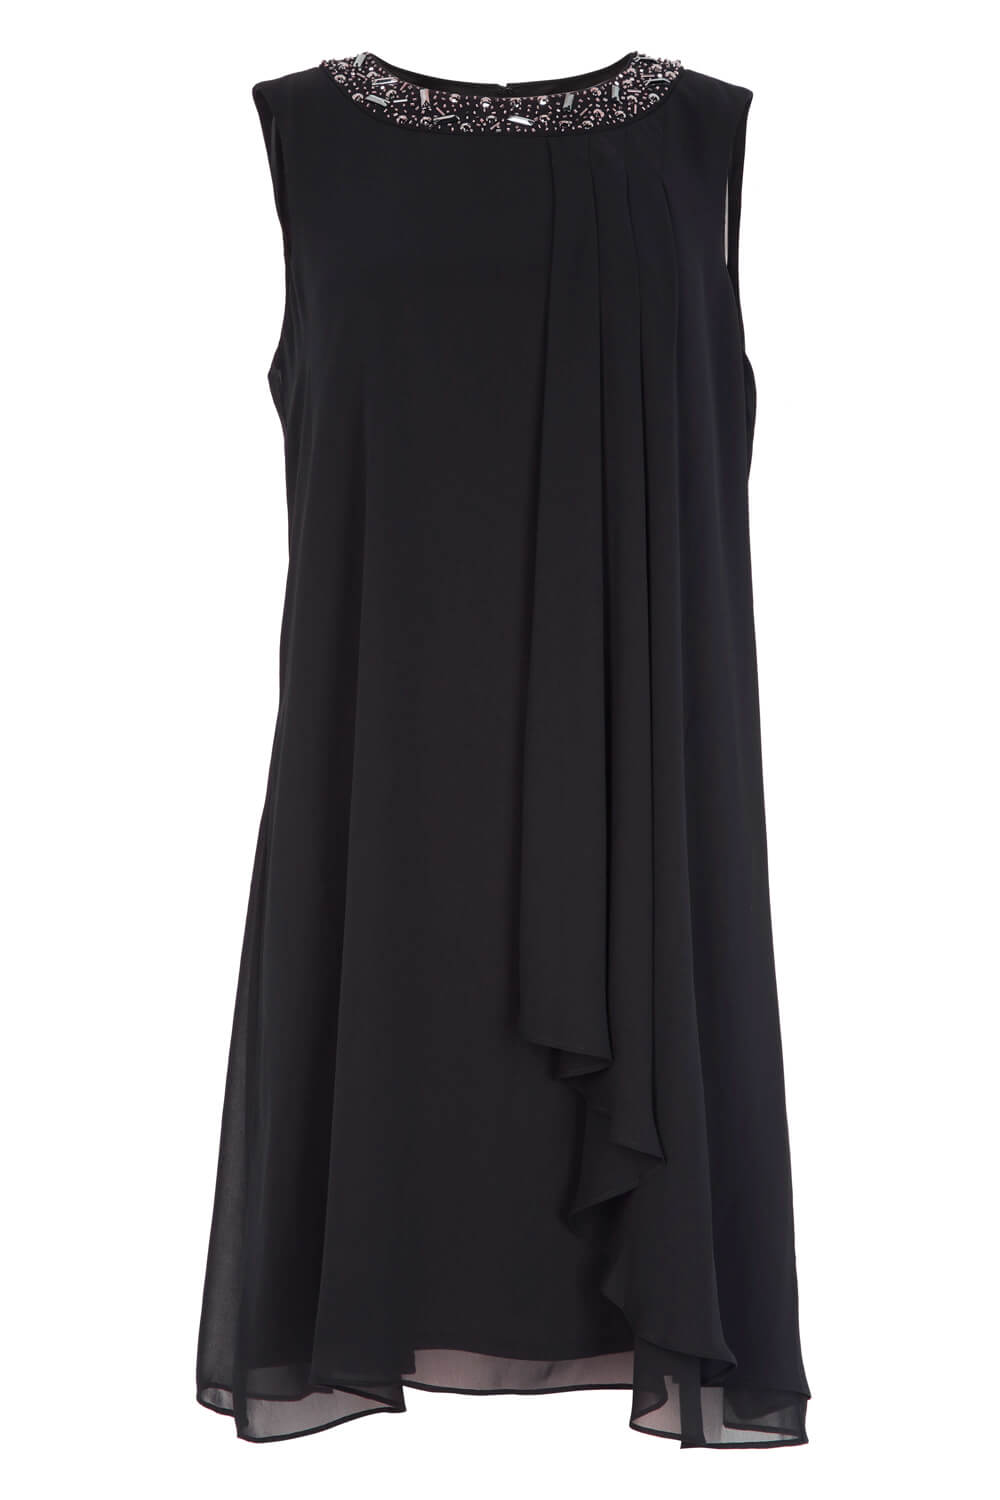 Black Embellished Neck Chiffon Dress, Image 4 of 4